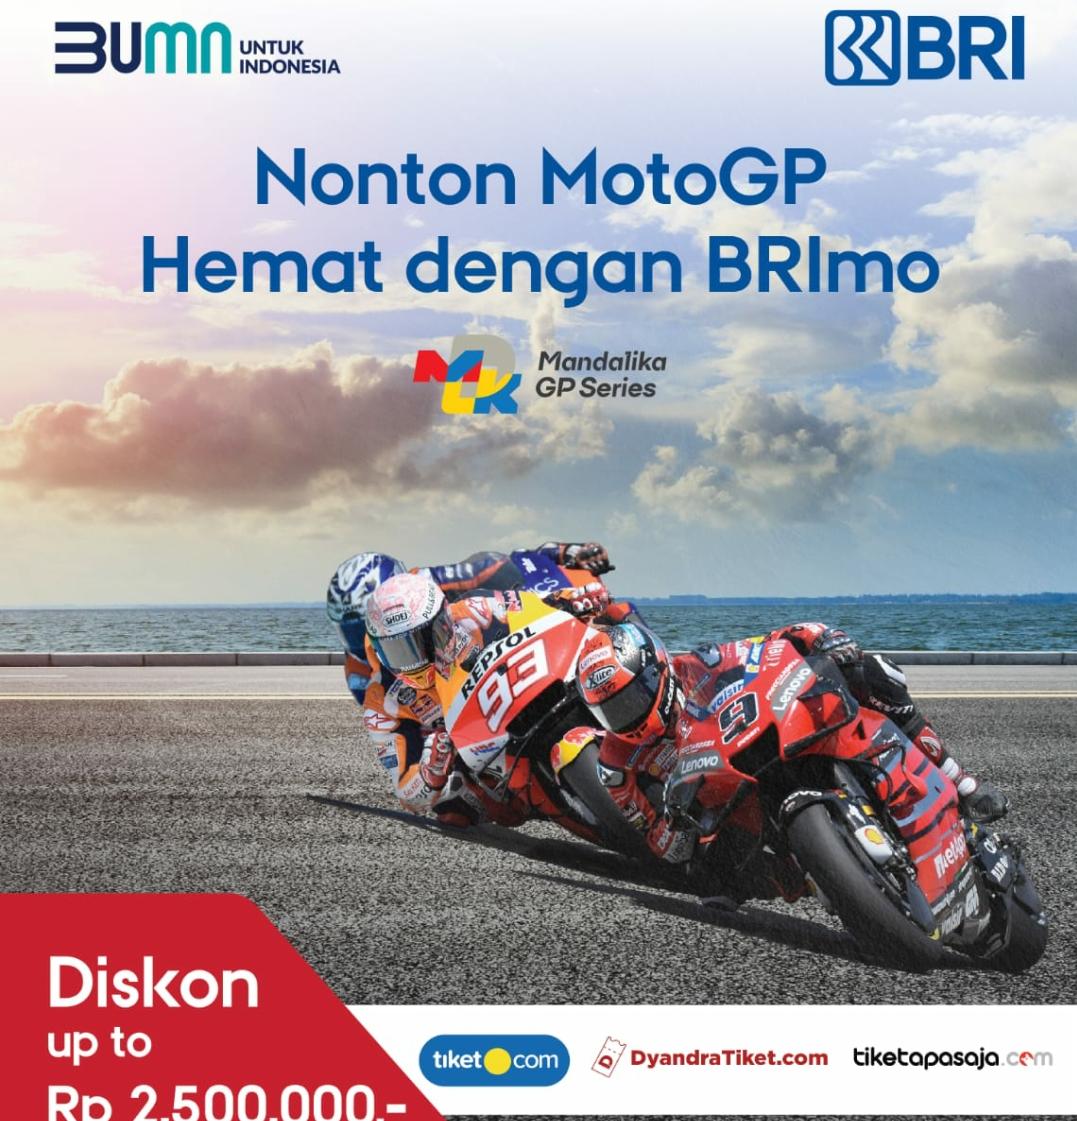 Nonton Ajang Bergengsi MotoGP Mandalika, Makin Hemat dan Mudah dengan BRImo